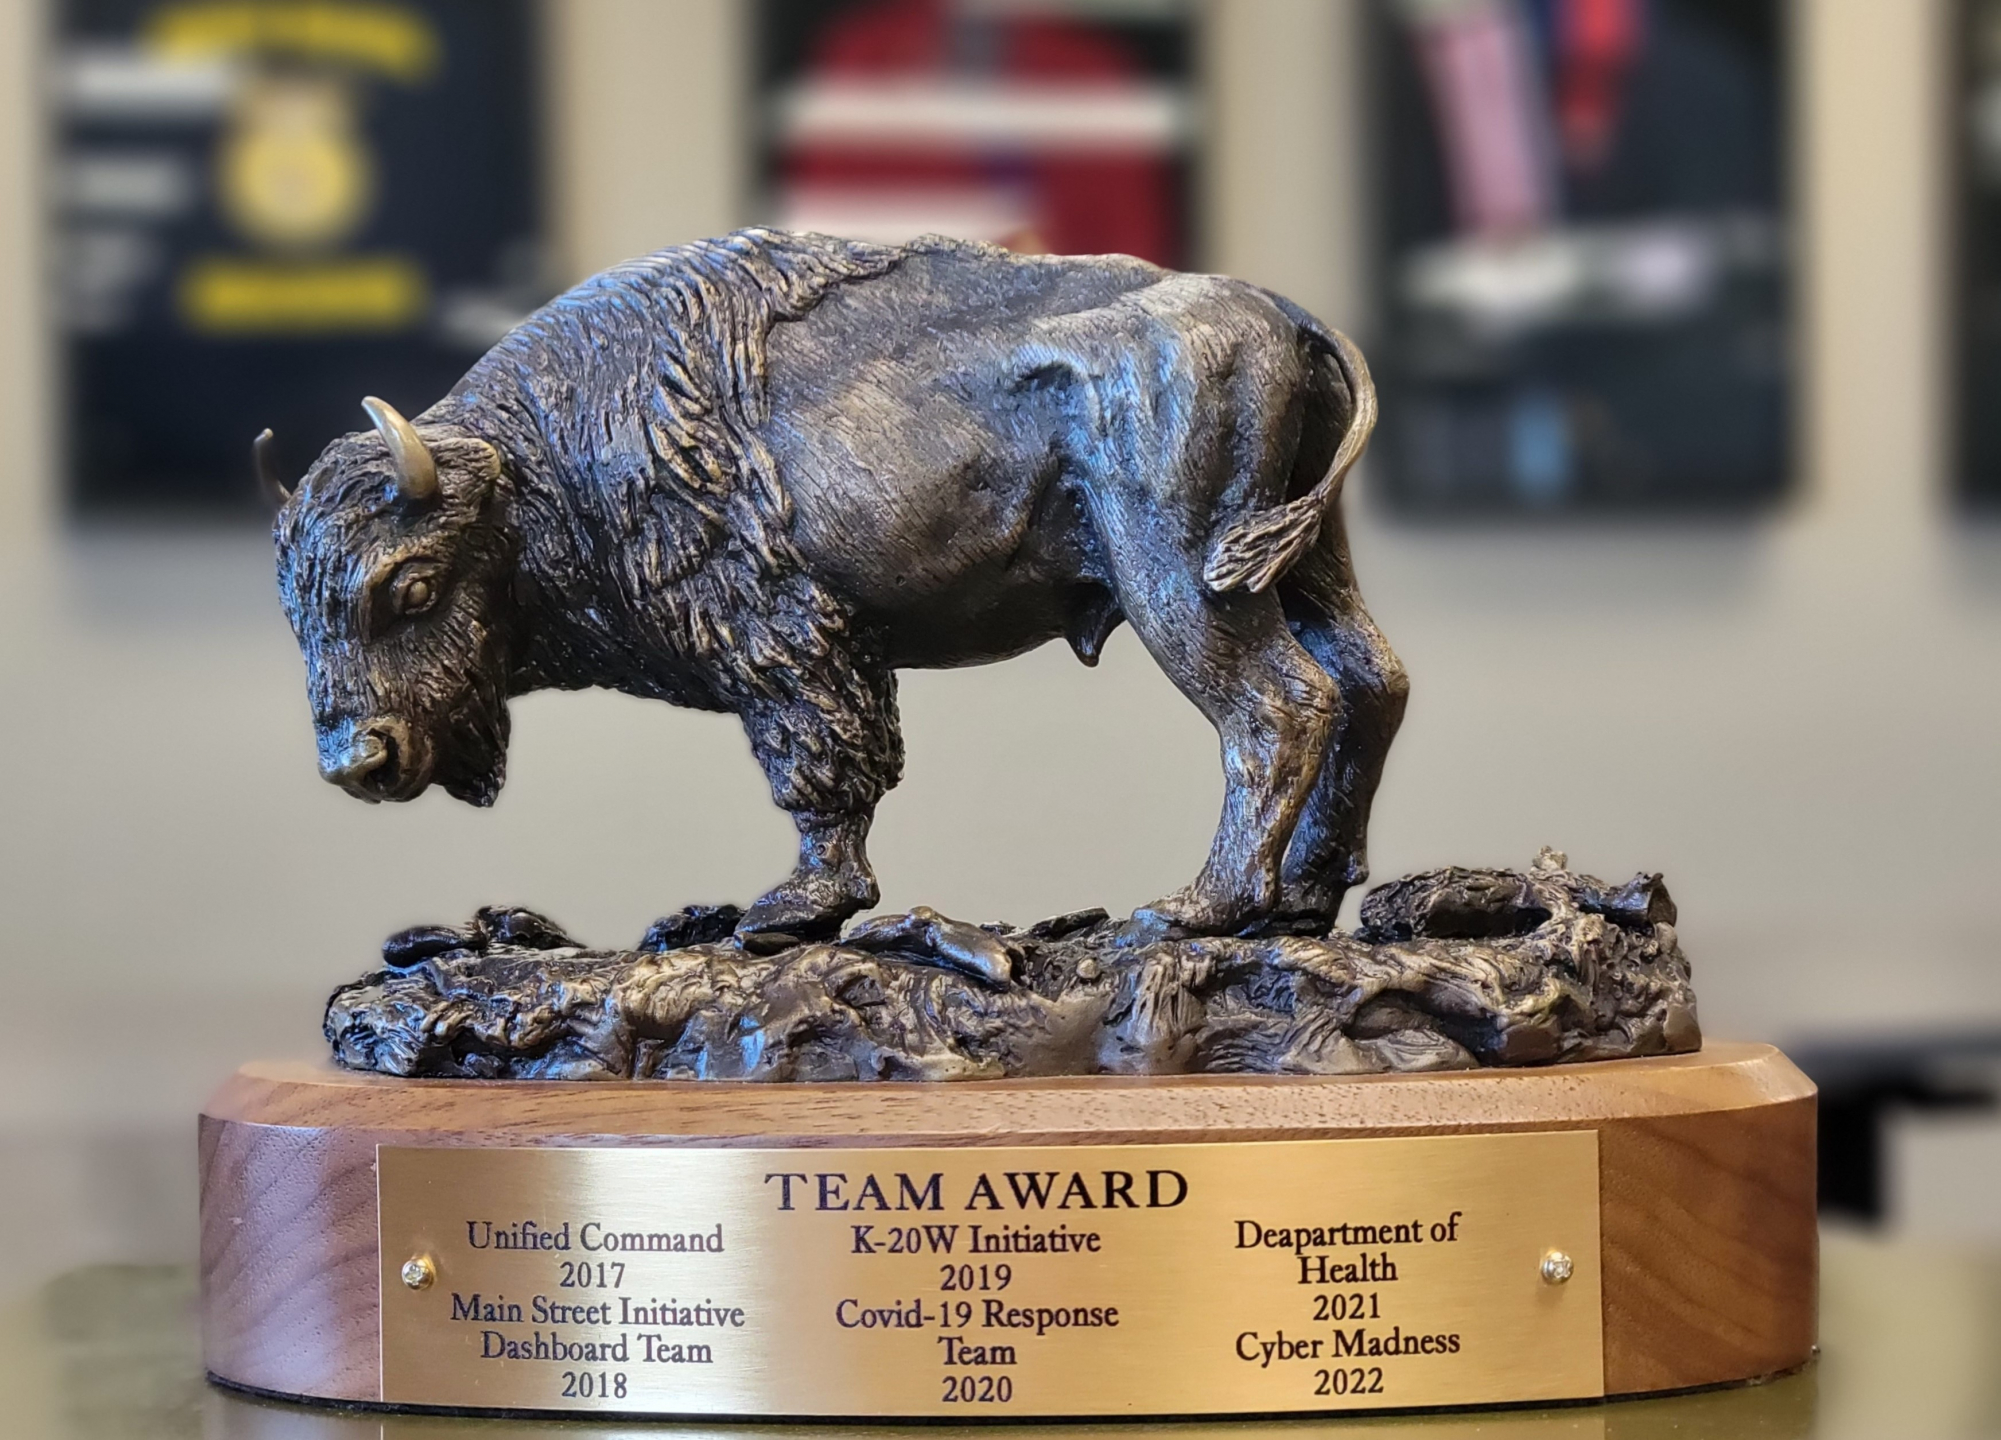 Roaming Bison Award Trophy